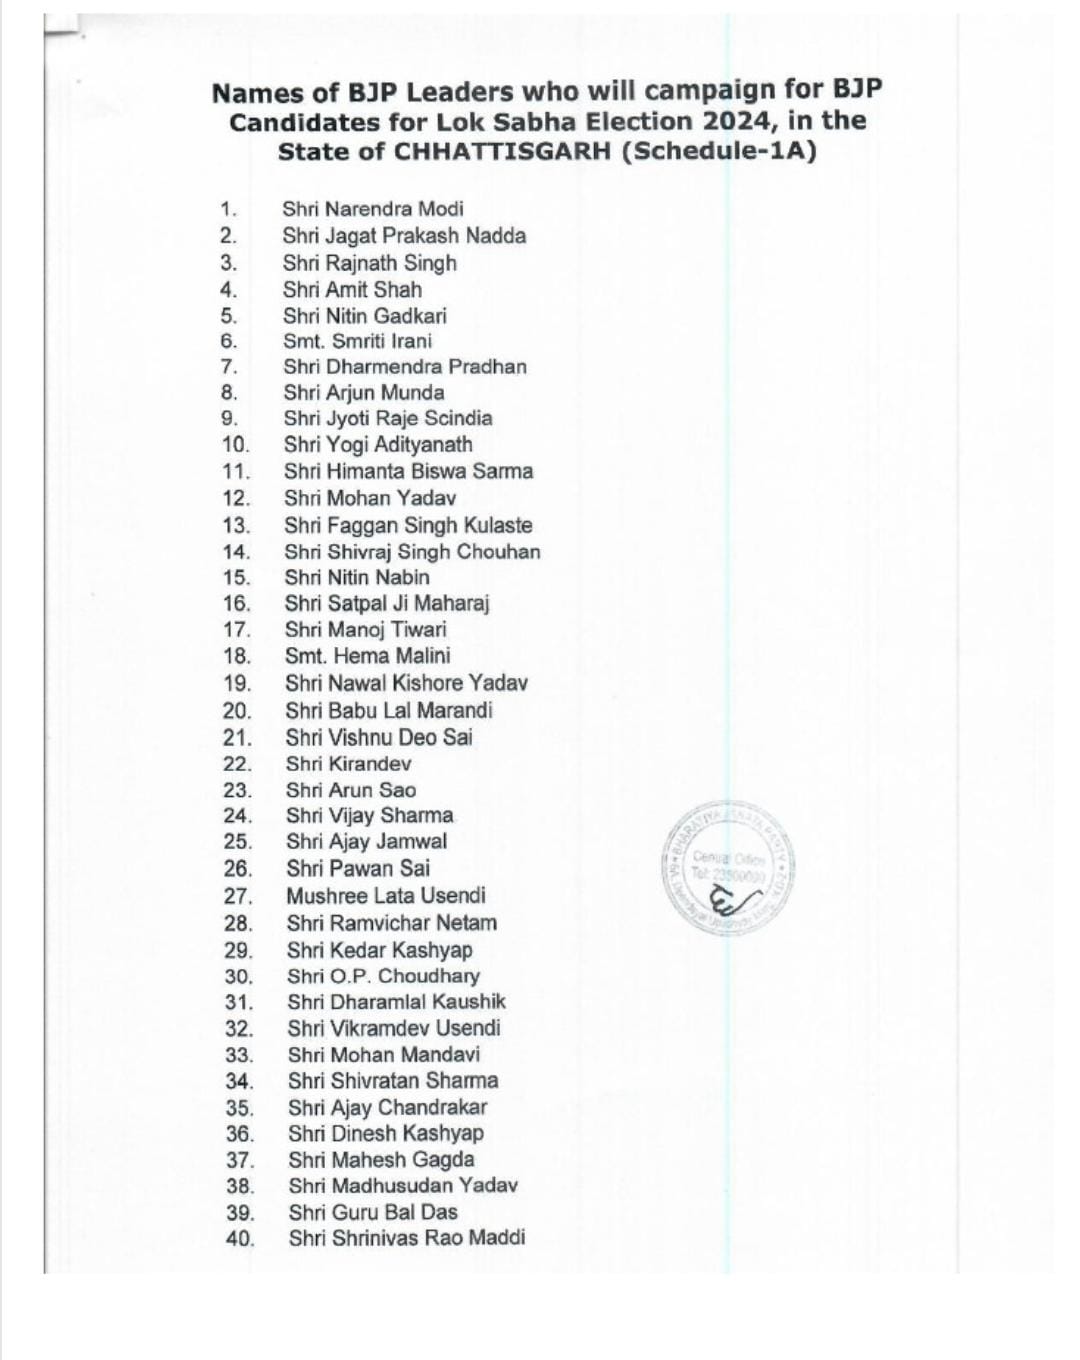 छत्तीसगढ़ के लिए BJP स्टार प्रचारकों की लिस्ट जारी, CM विष्णुदेव साय और ओपी चौधरी समेत इन 20 दिग्गजों के नाम शामिल…